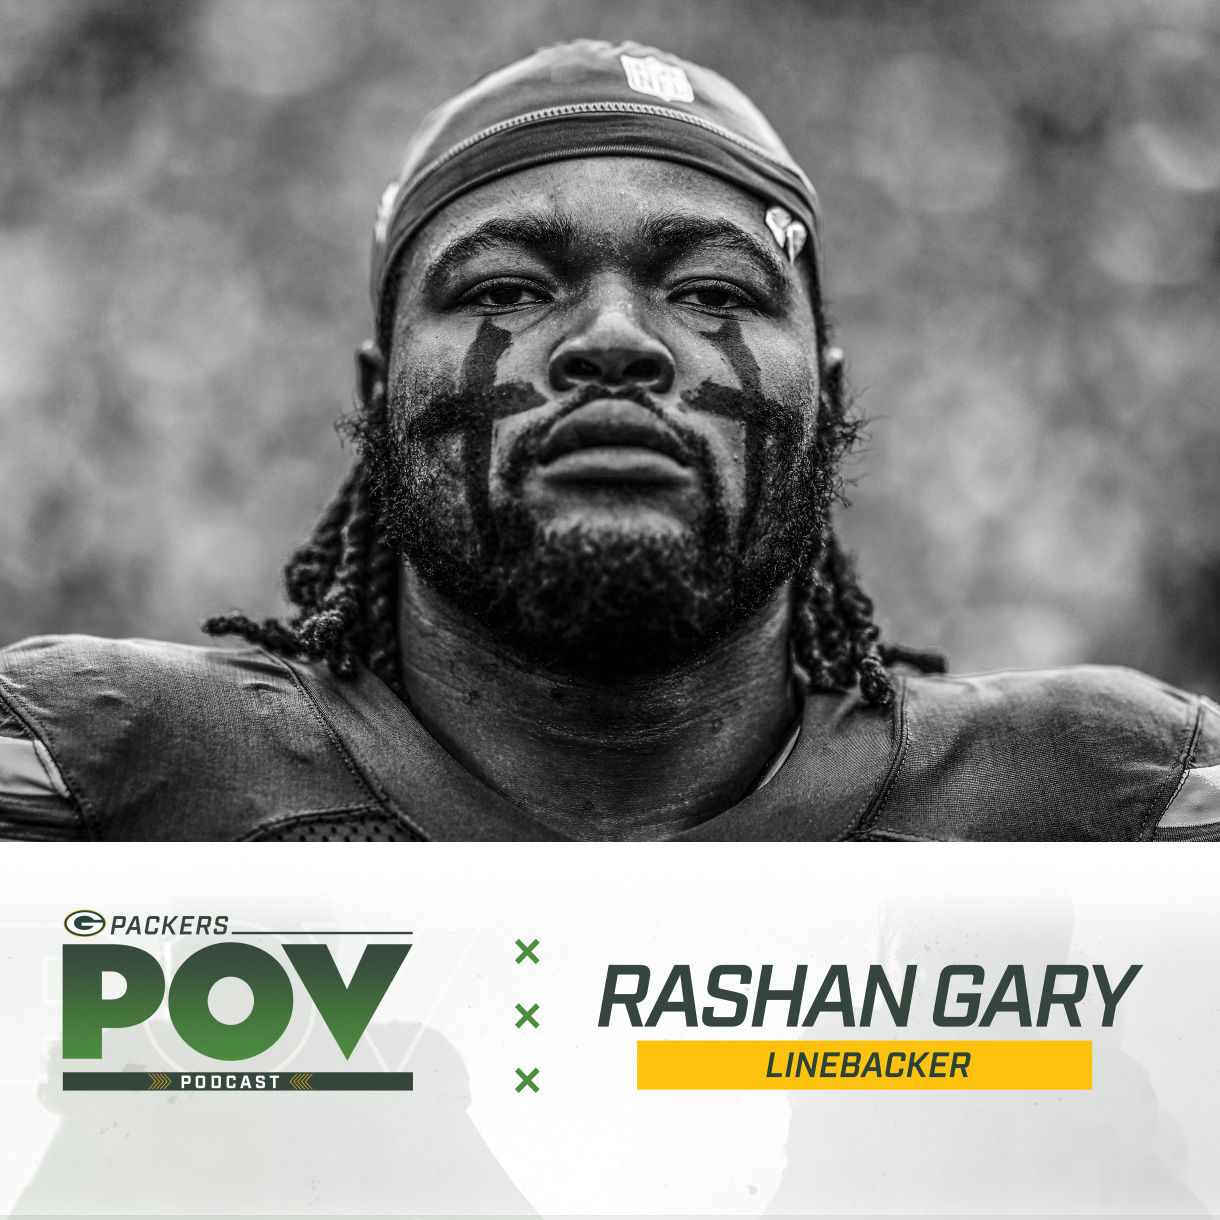 #15 Packers POV: Rashan Gary